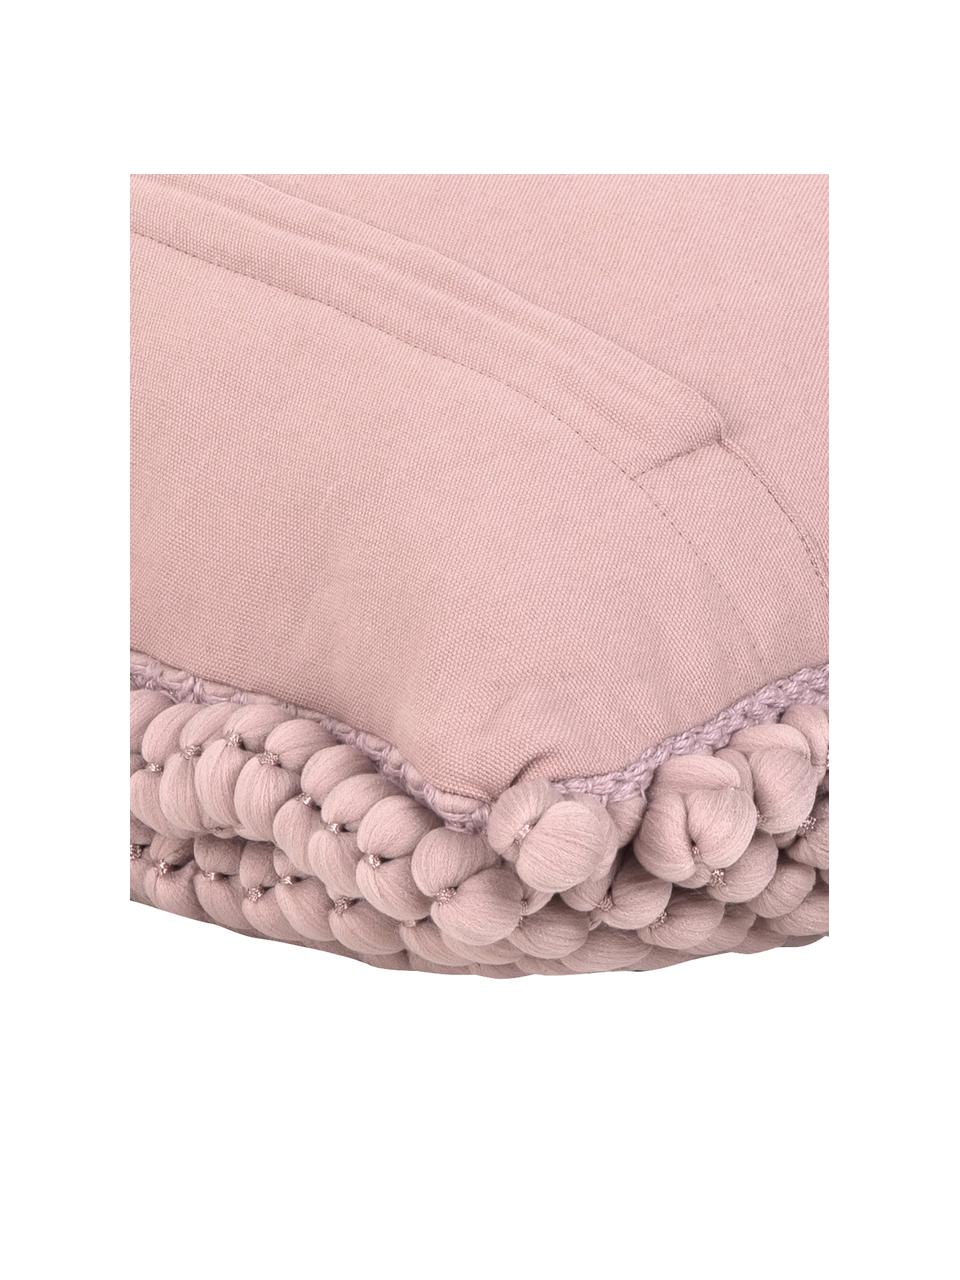 Federa arredo con palline di tessuto rosa cipria Iona, Retro: 100% cotone, Rosa cipria, Larg. 45 x Lung. 45 cm